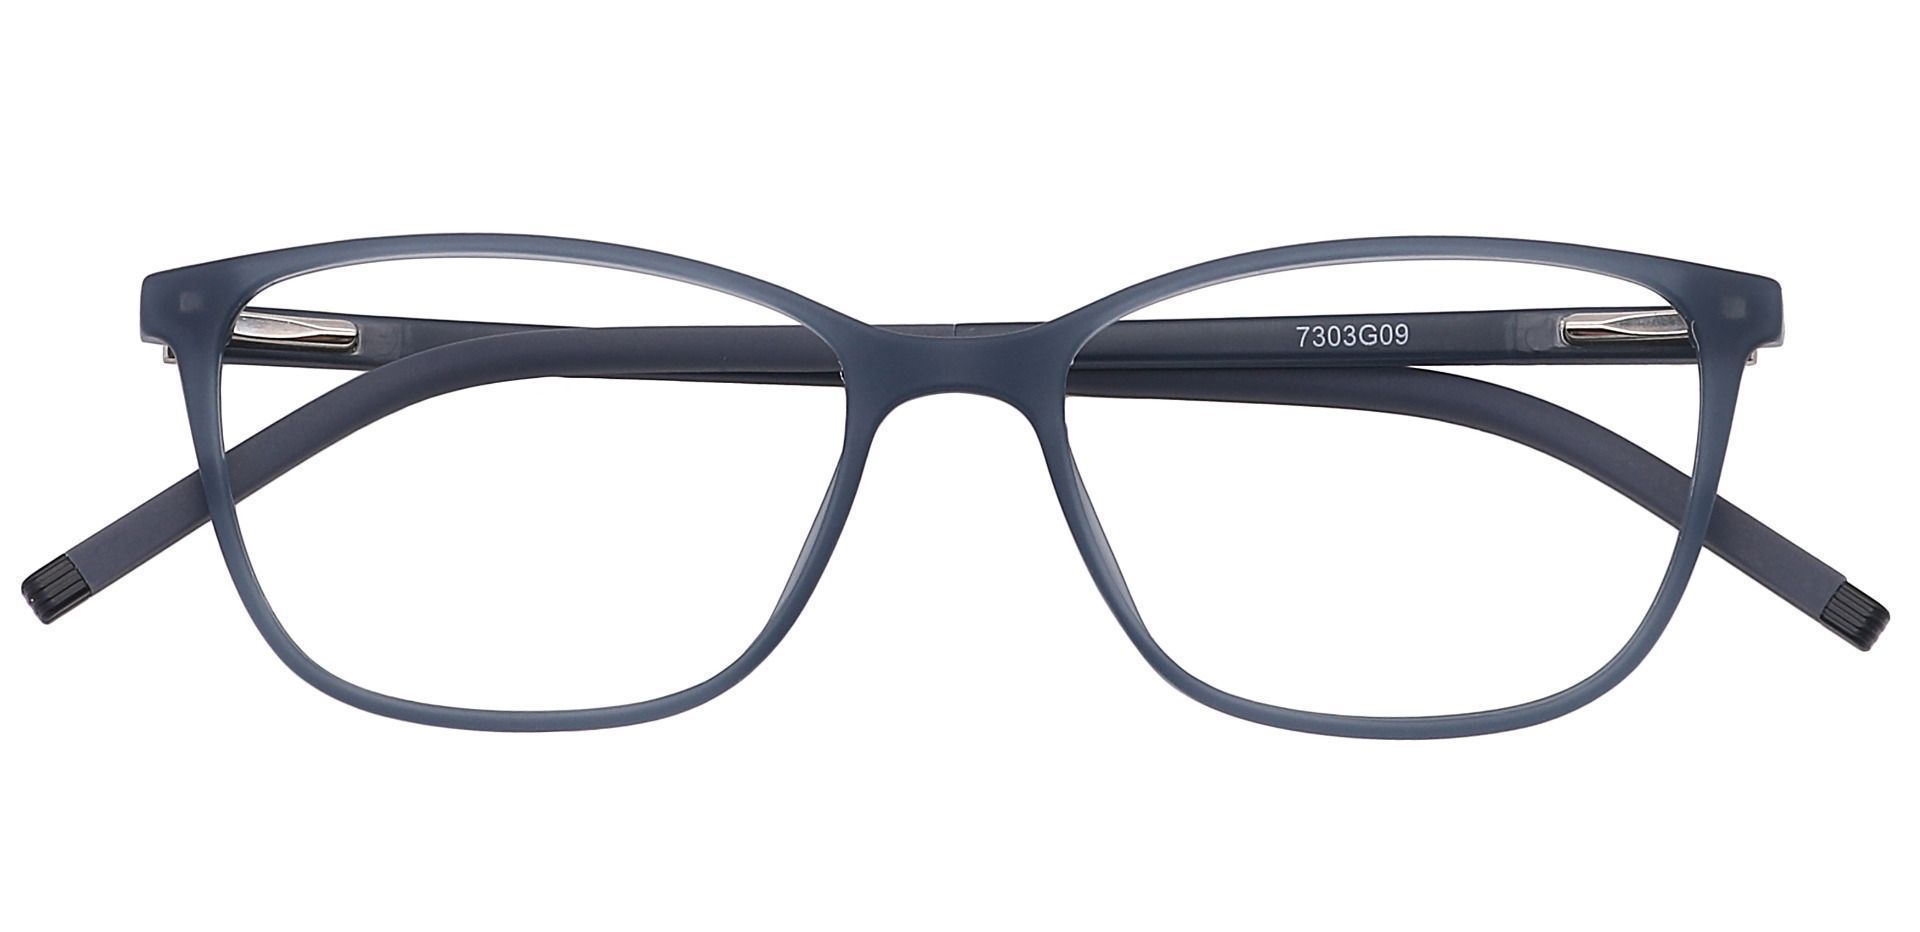 Danica Square Progressive Glasses - Gray